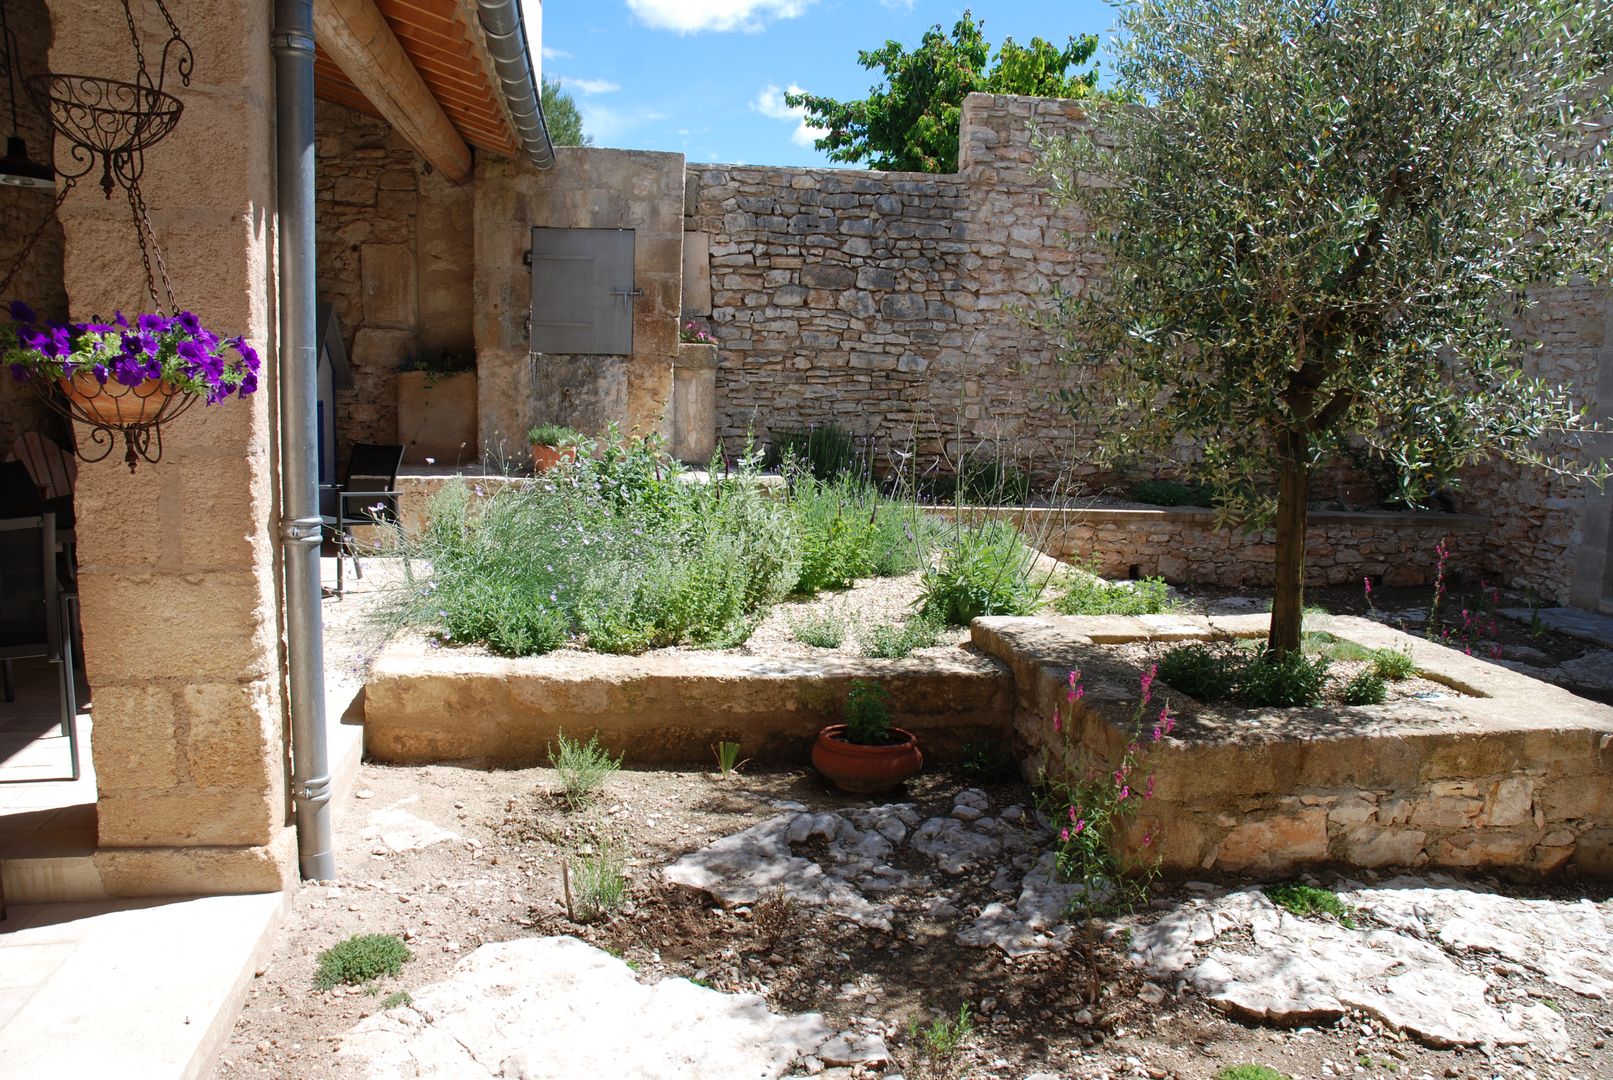 Le patio Jean-Jacques Derboux jardin,méditerranéen,patio,pierre,olivier,naturel,aménagement,conception